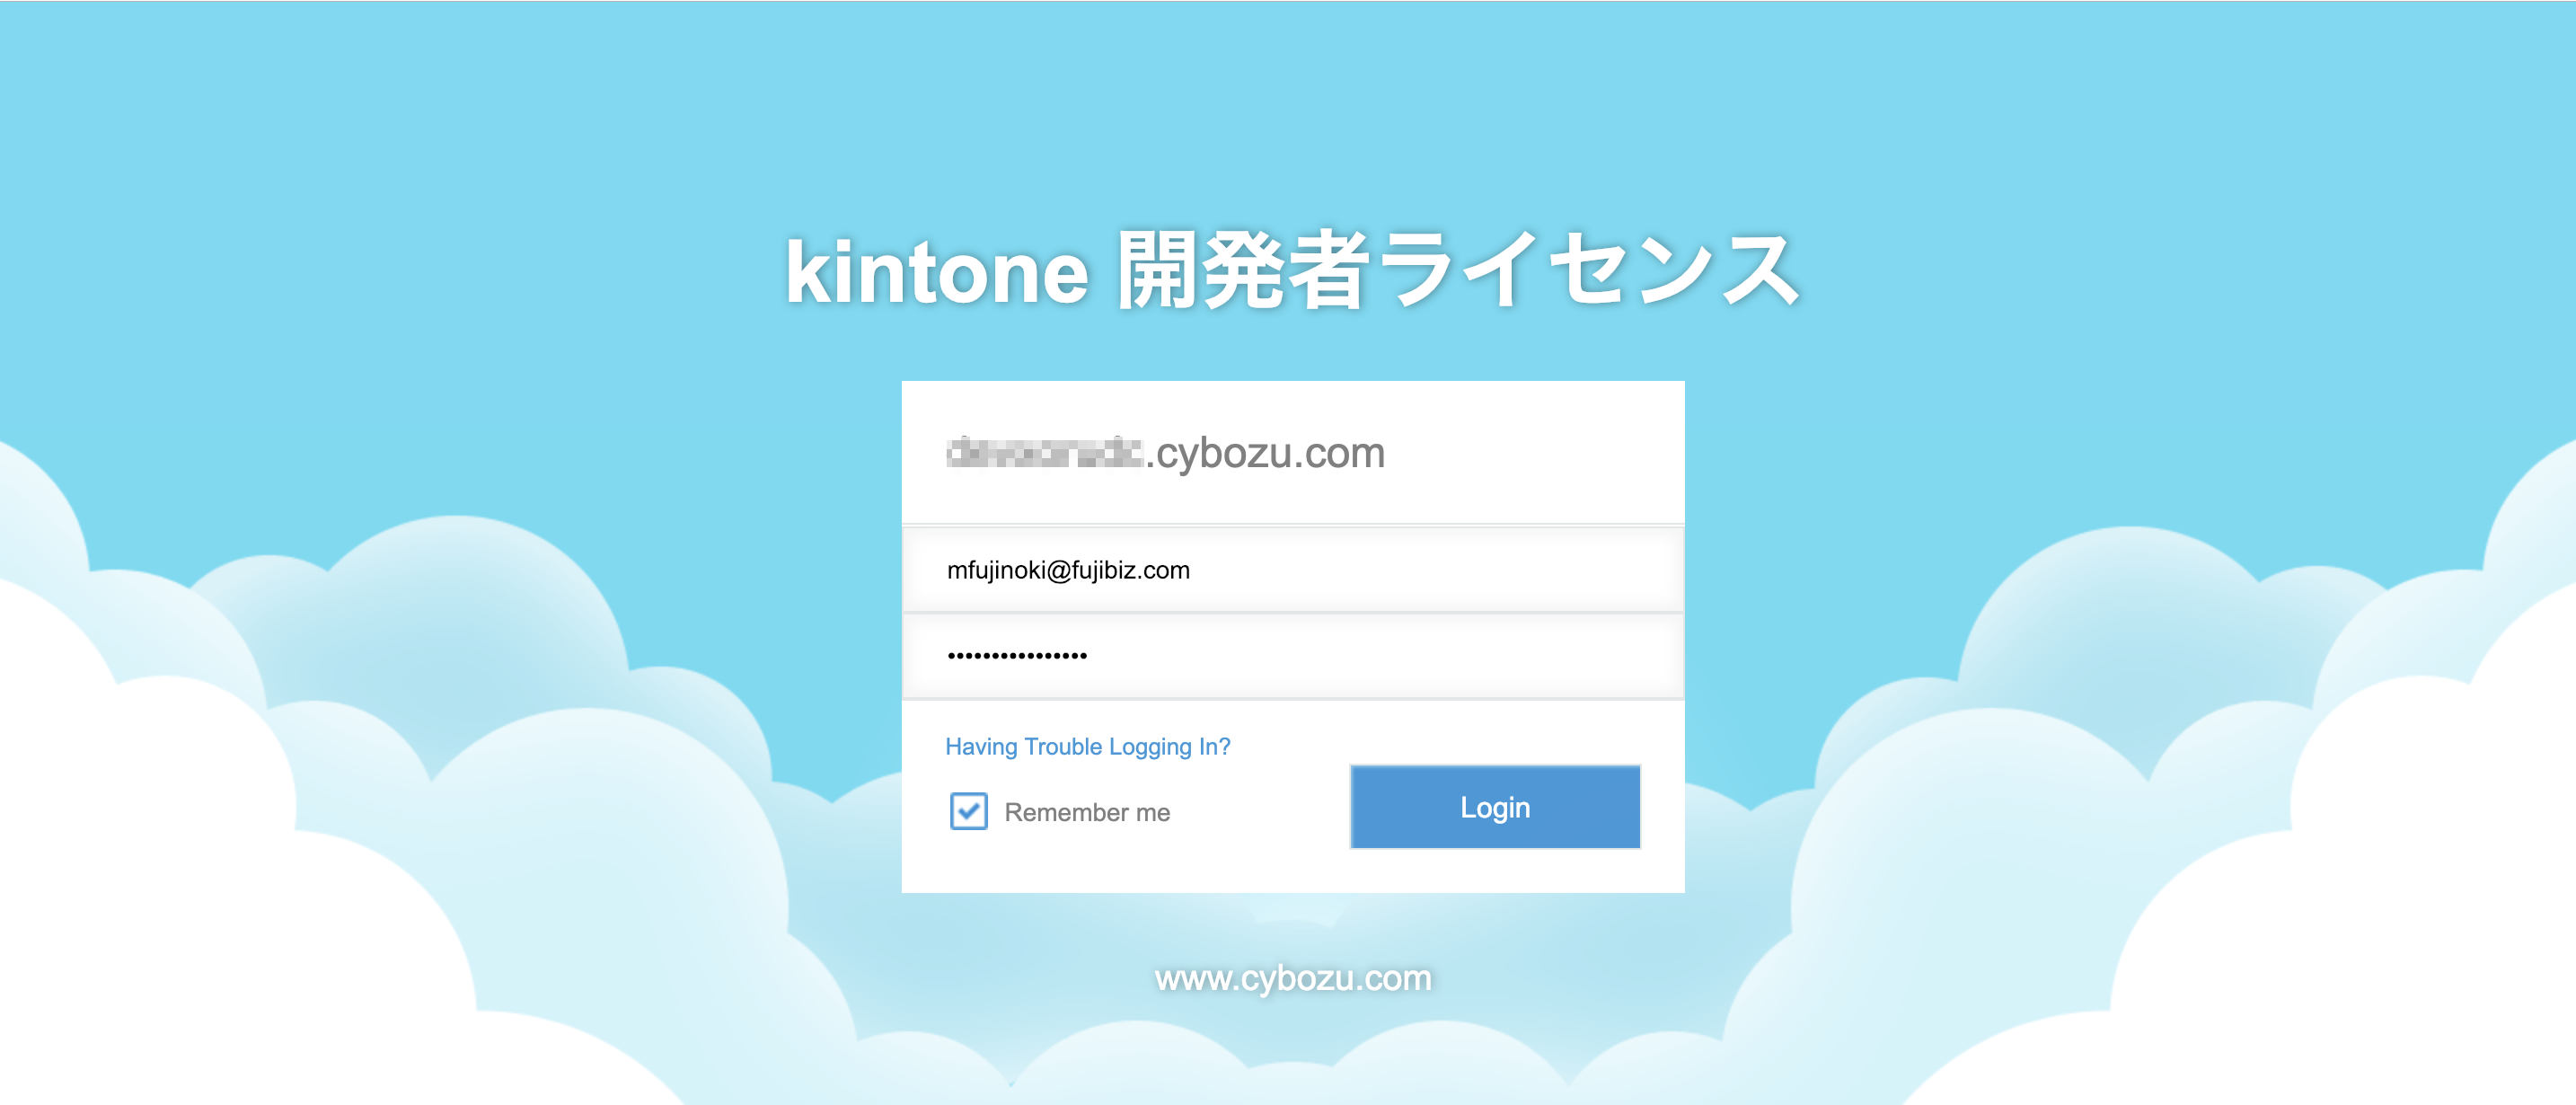 kintone ログイン画面